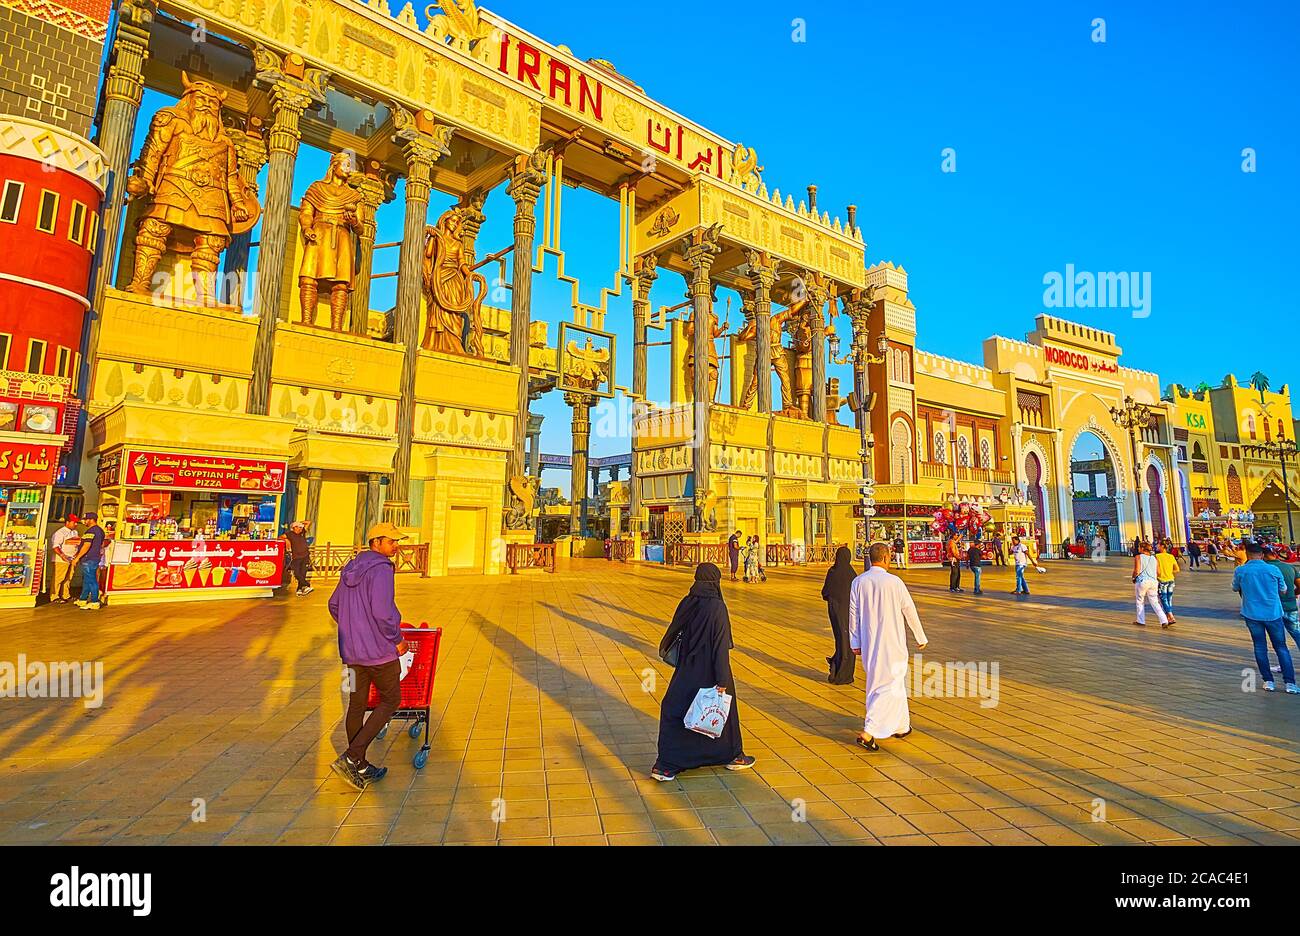 DUBAÏ, Émirats Arabes Unis - 5 MARS 2020 : la promenade du village global de Dubaï avec pavillon de l'Iran, ornée de grandes sculptures, colonnes et reliefs en Persi Banque D'Images